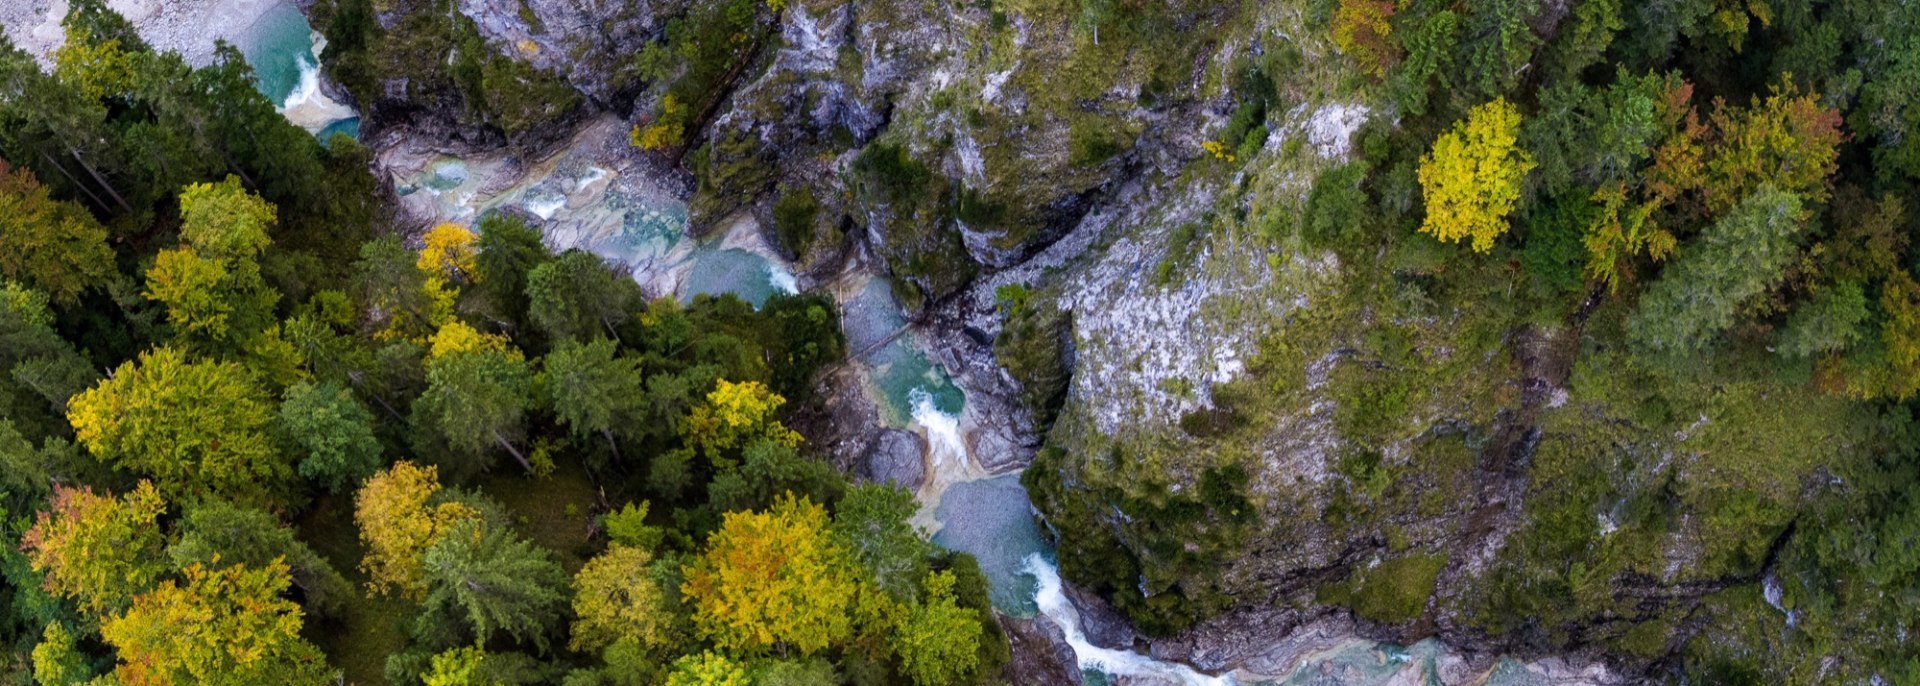 Finzklamm der ungezähmte Wasserlauf in Mitten wilder Natur der Alpenwelt Karwendel, © Alpenwelt Karwendel | Kriner & Weiermann